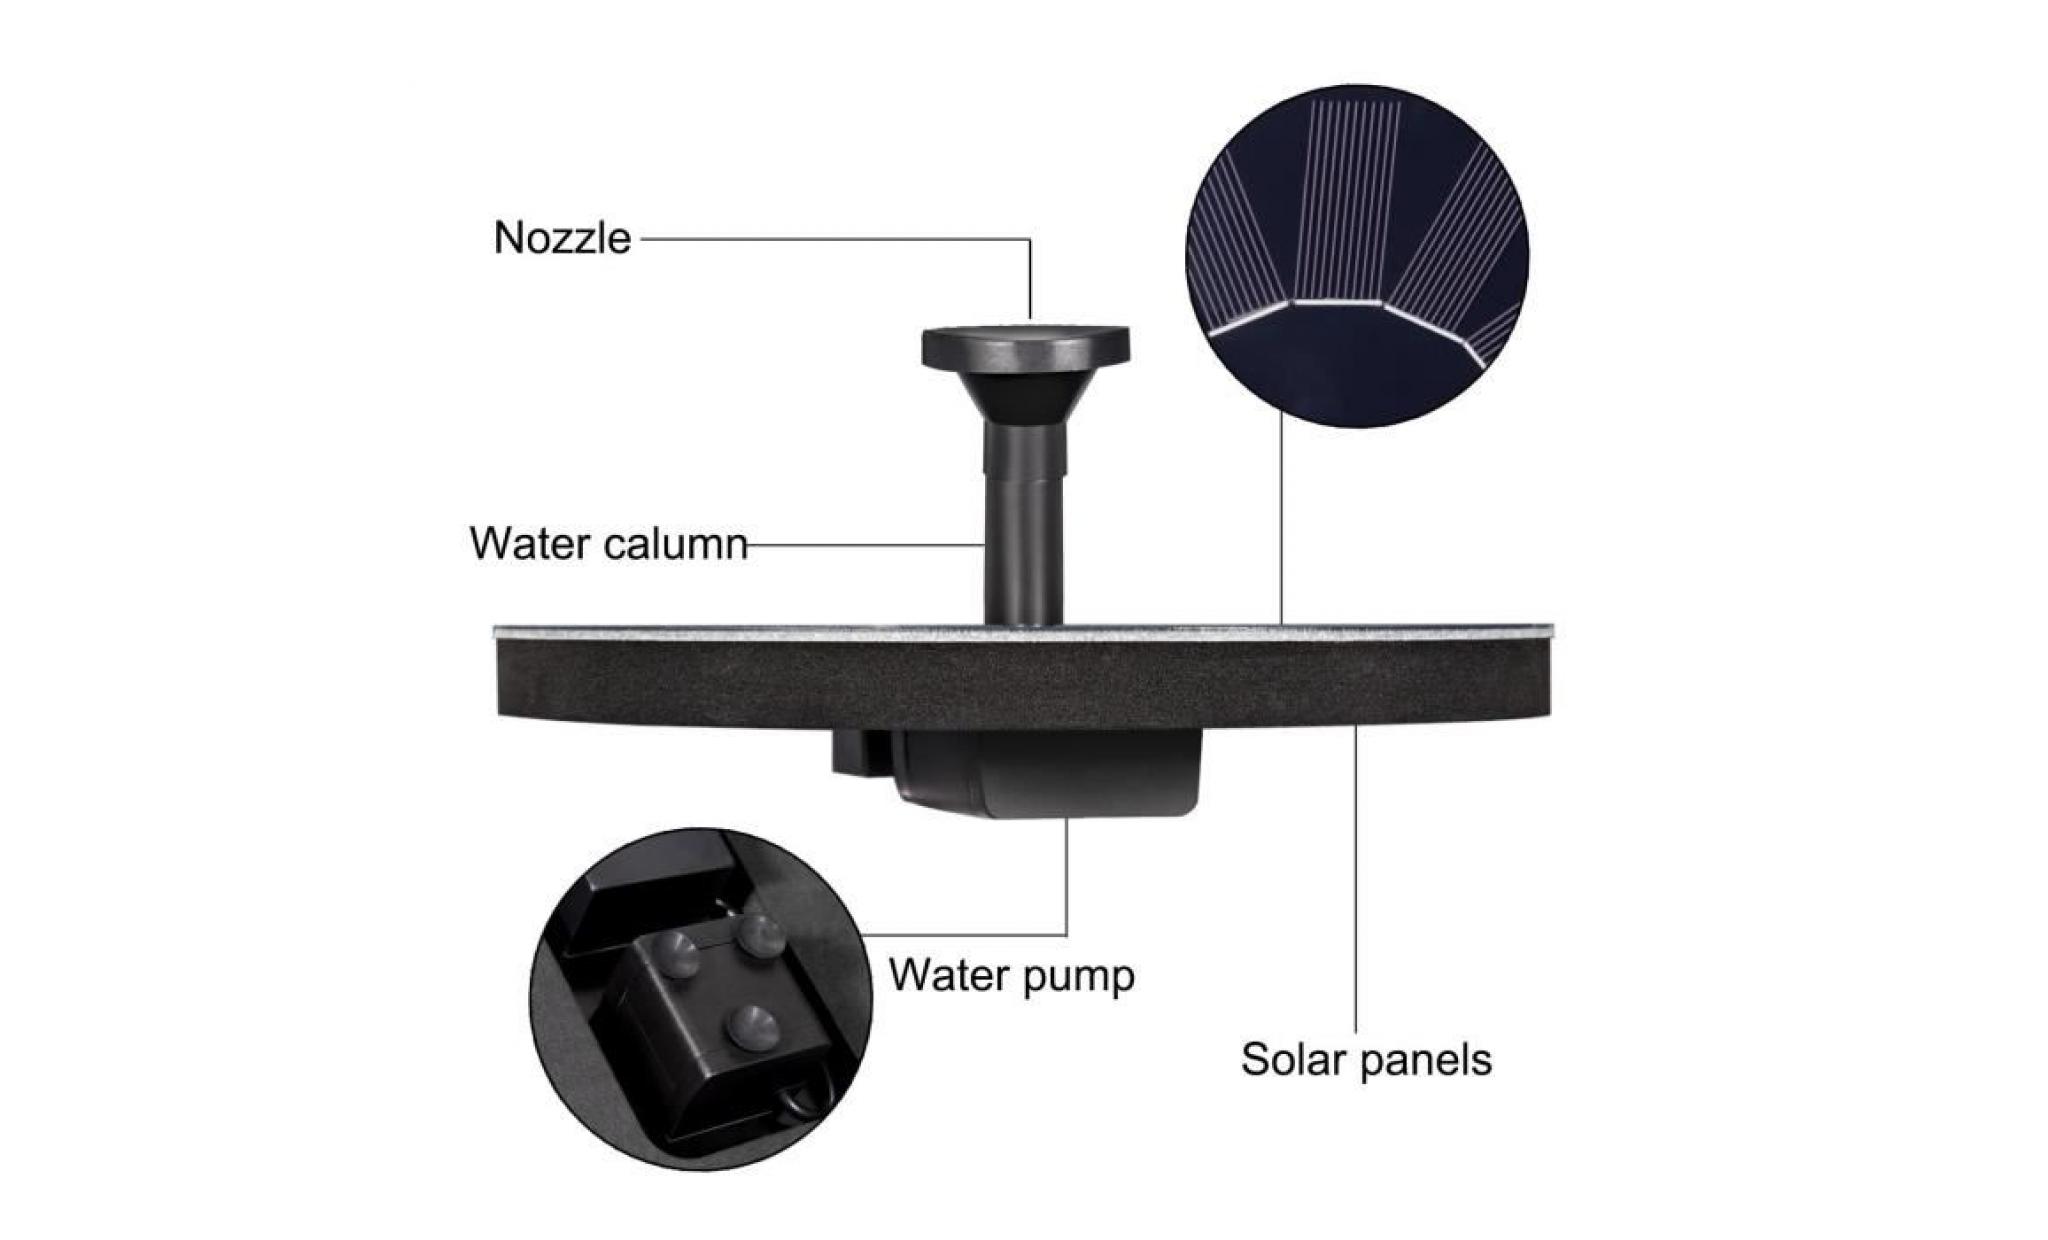 deyard pompe solaire améliorée pour fontaine, pompe solaire bassin de 1.5 watts   submersible   kit pompe à eau fontaine pour bain pas cher